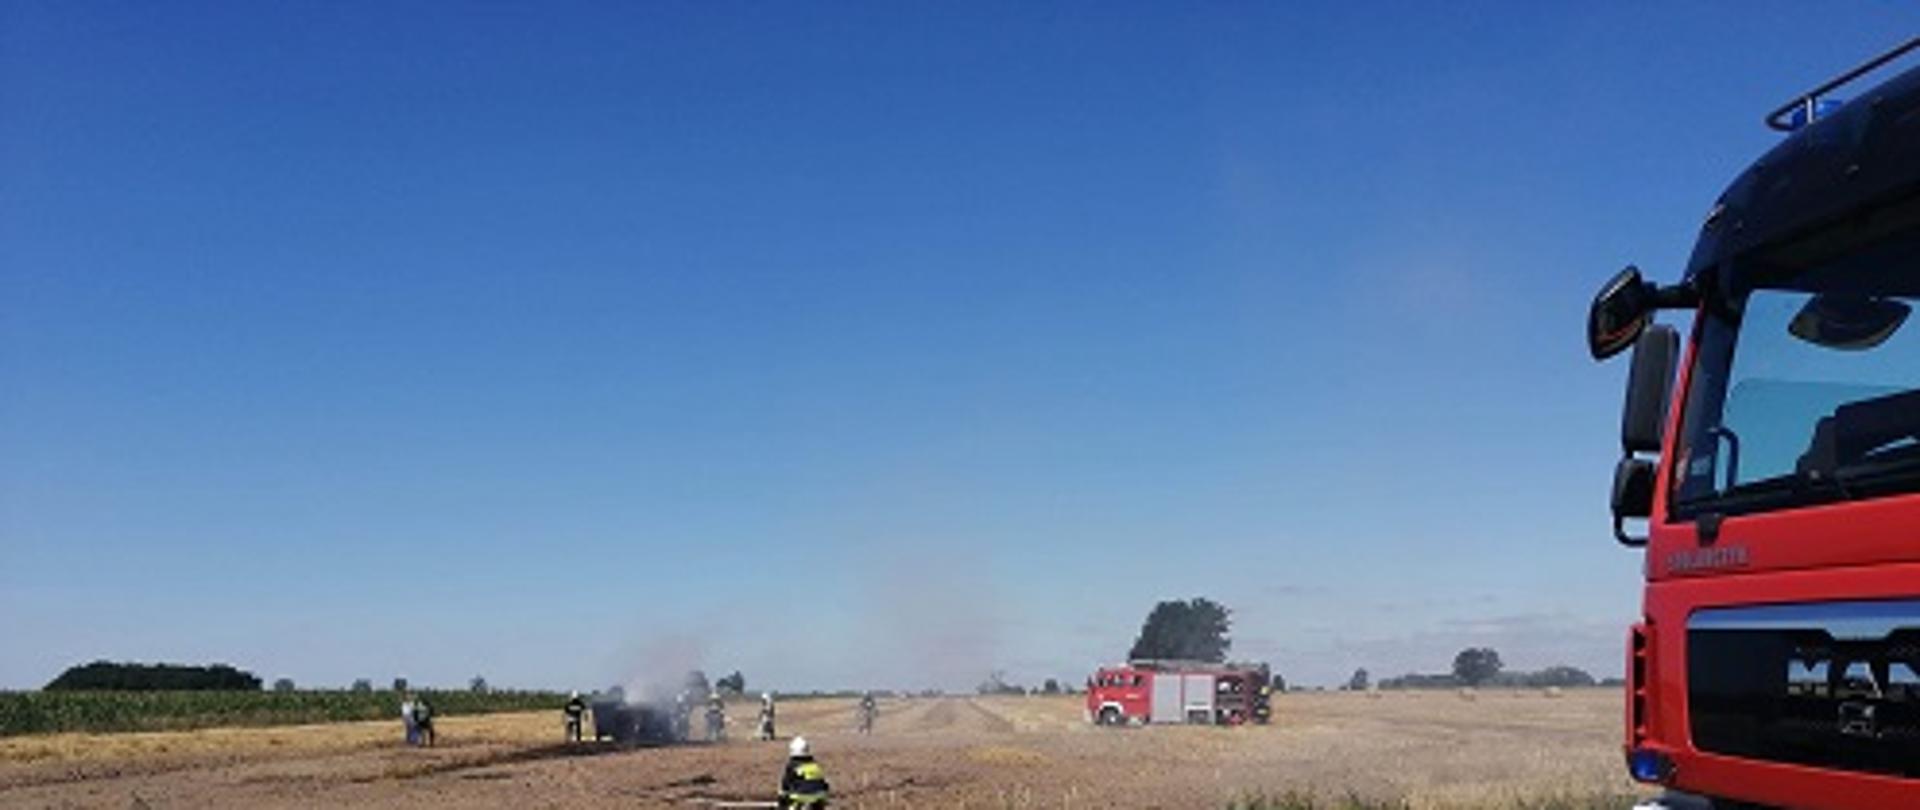 przód samochodu pożarniczego w tle strażacy gaszący pożar maszyny rolniczej